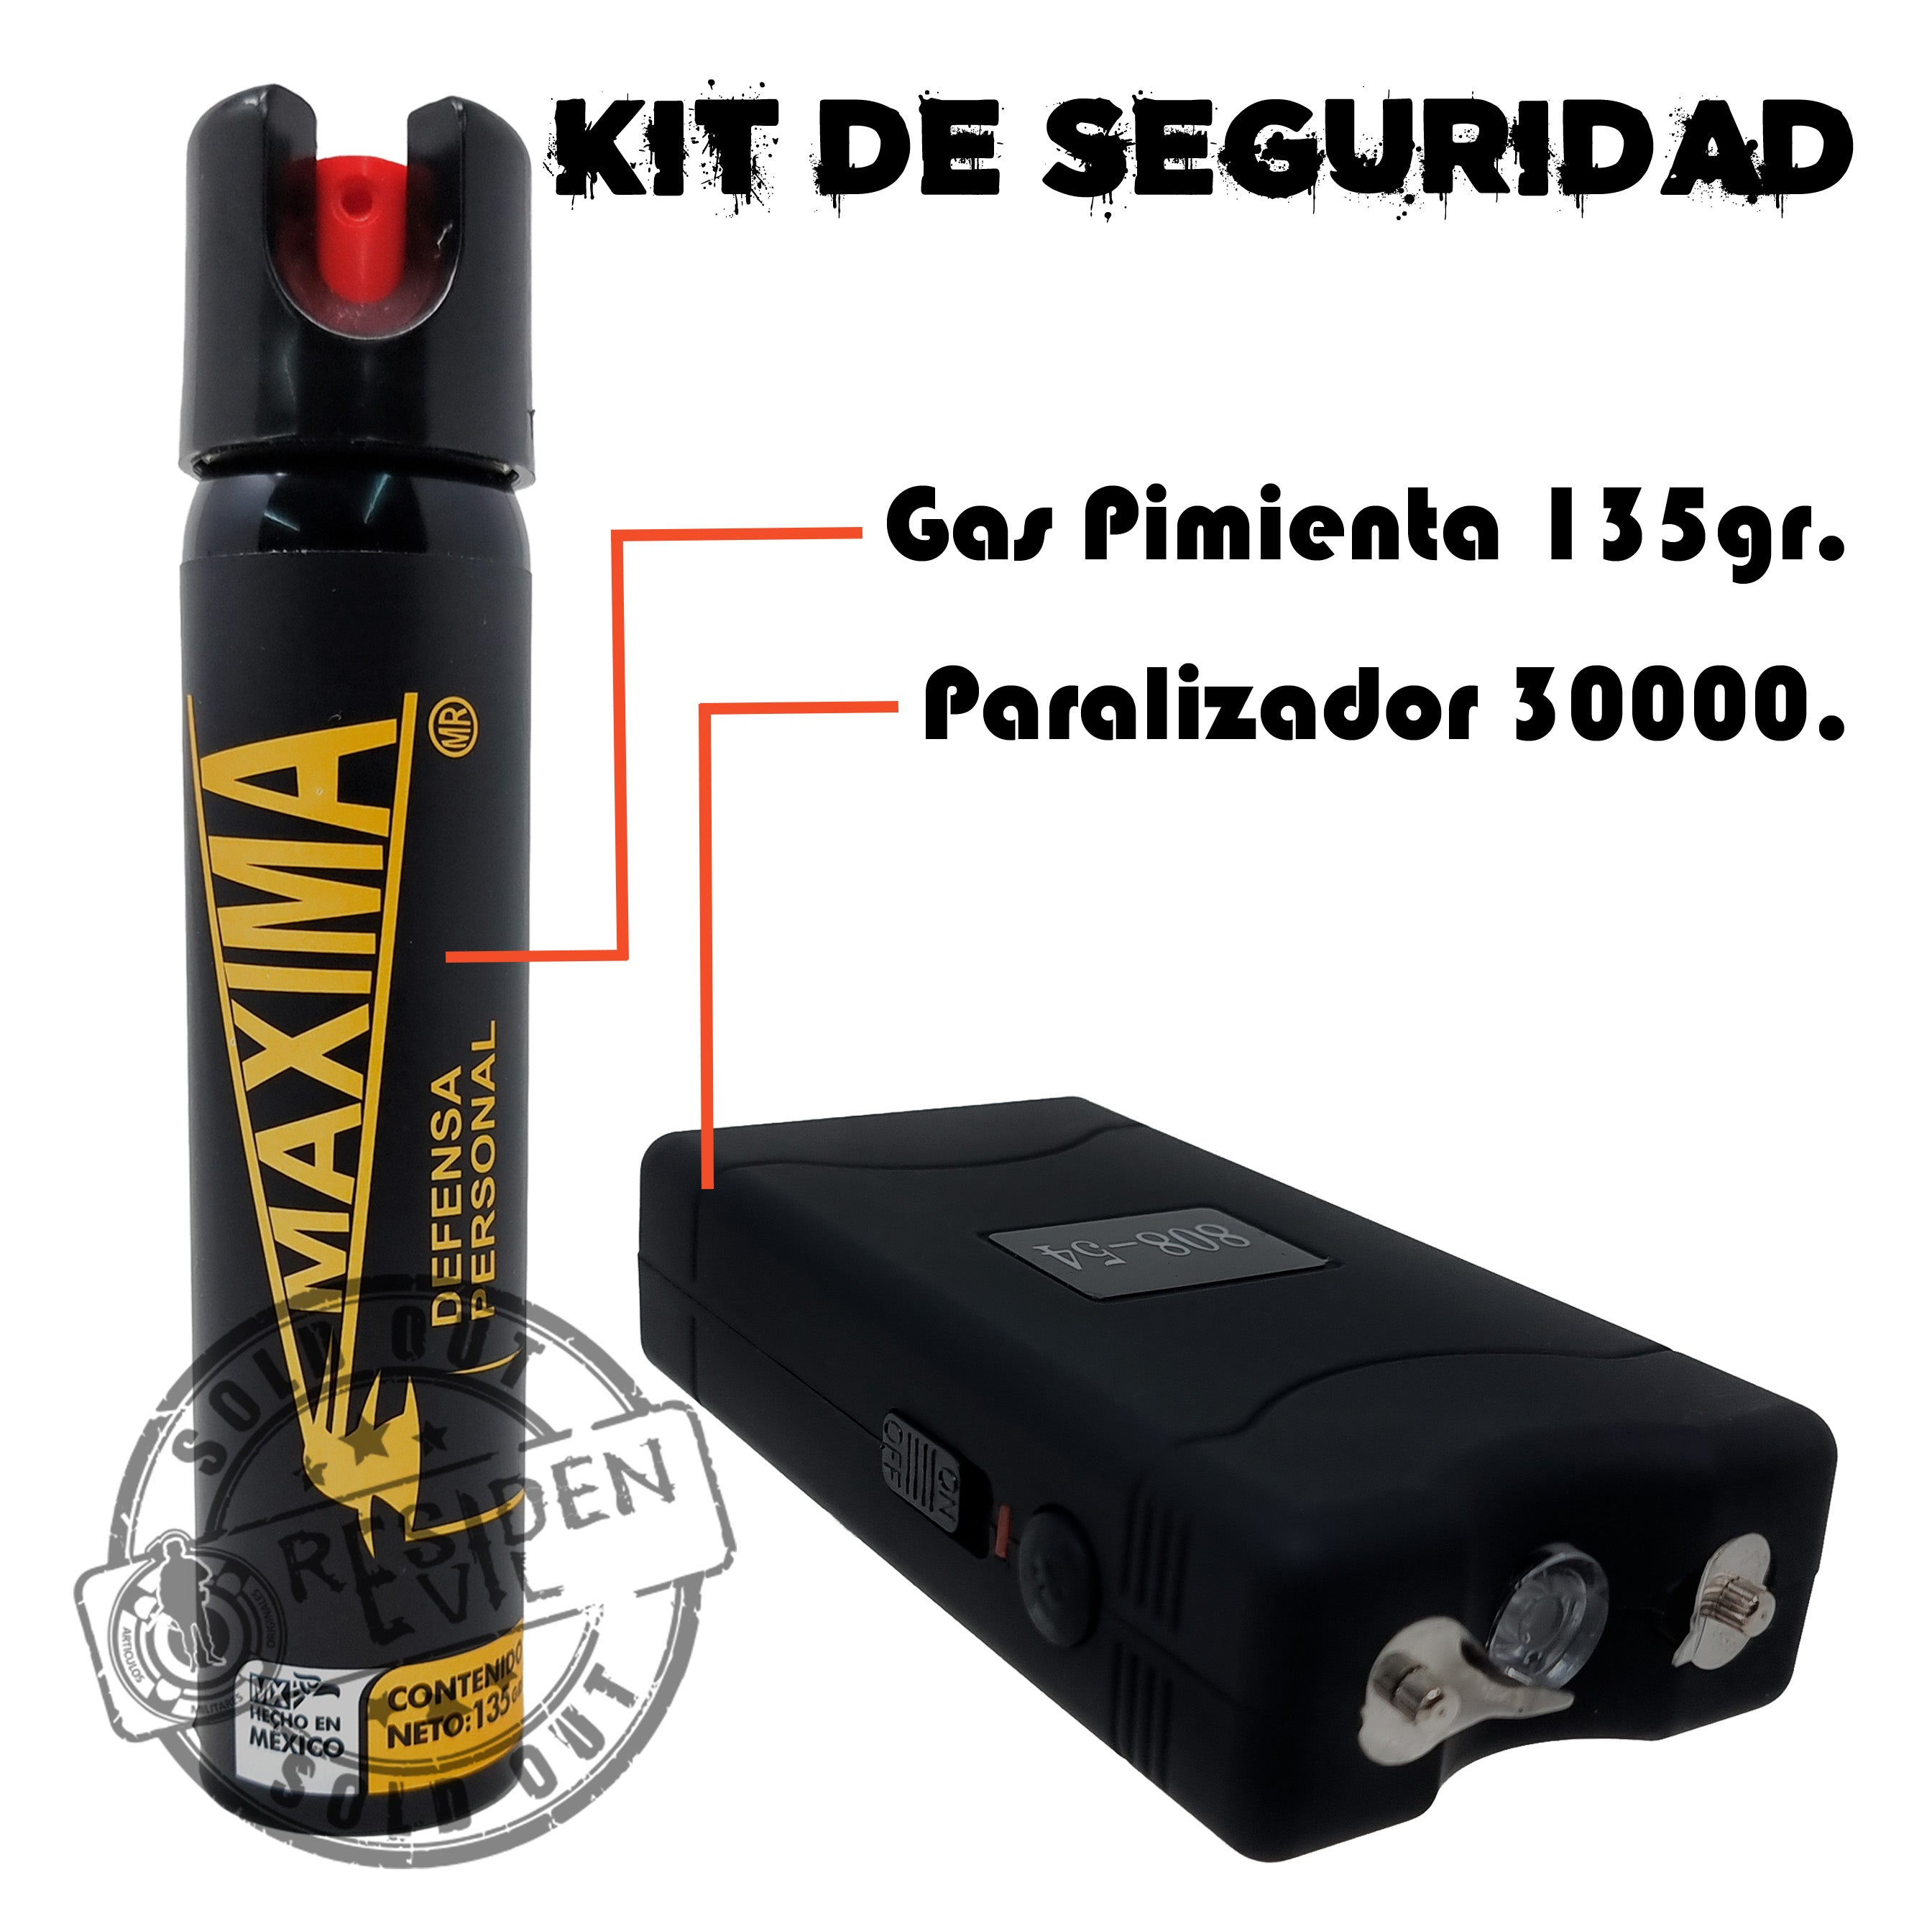 Gas Pimienta/lacrimogeno Defensa Personal 135 Grms Seguridad